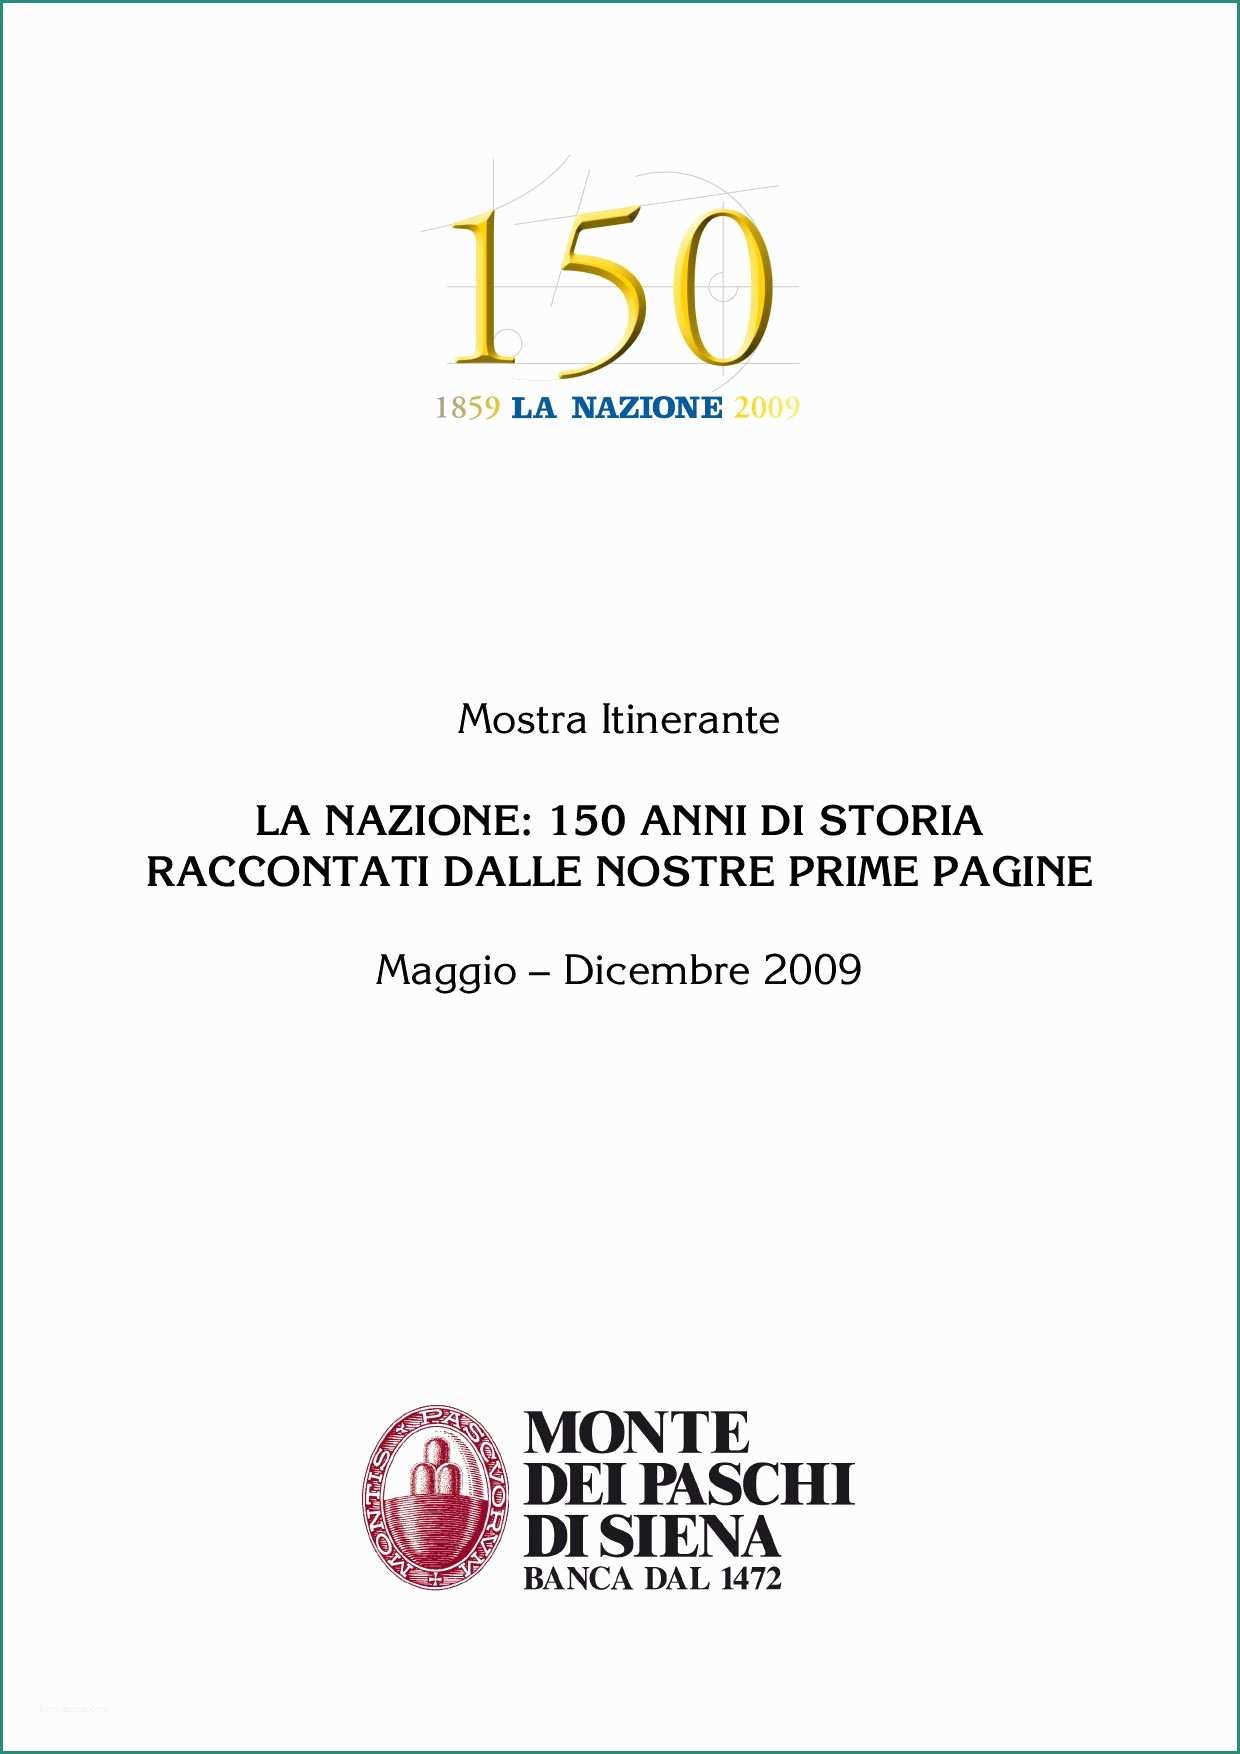 Divano Posti Misure E 150 Anni De La Nazione by Michele Accursi issuu